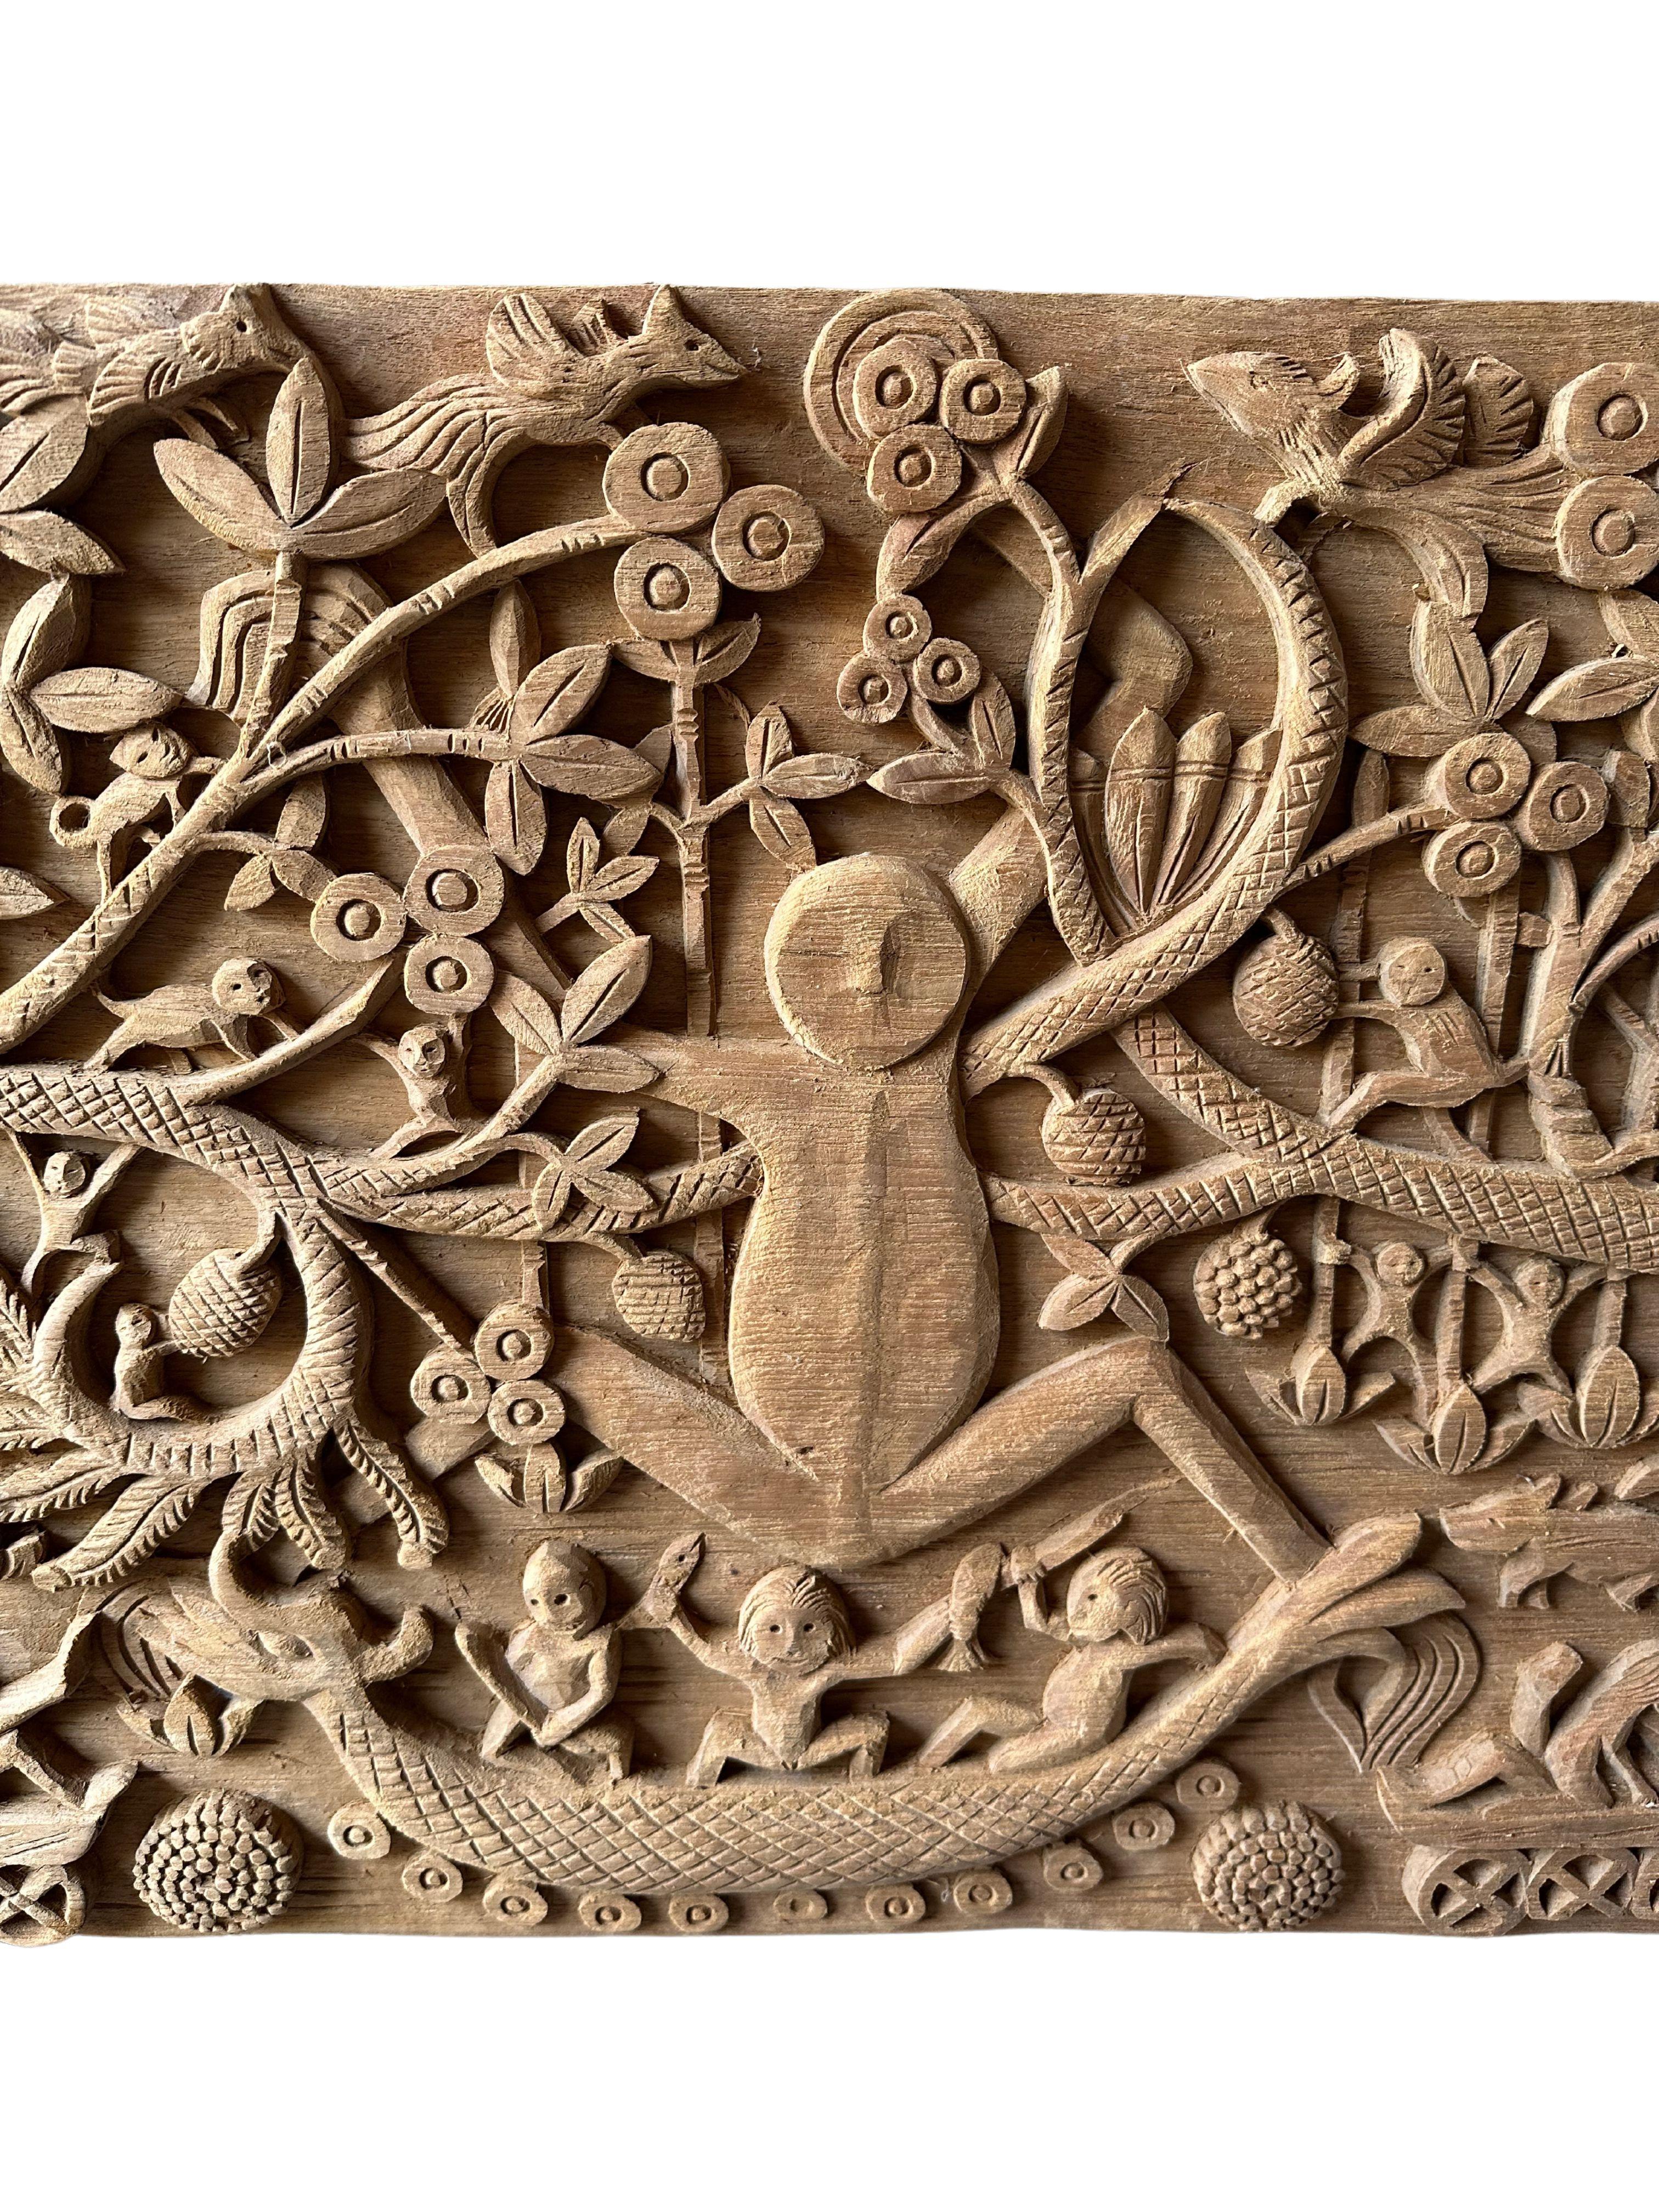 Hand-Crafted Hand-Carved Teak Wood Sculpture Panel Depicting Dayak Mythology For Sale